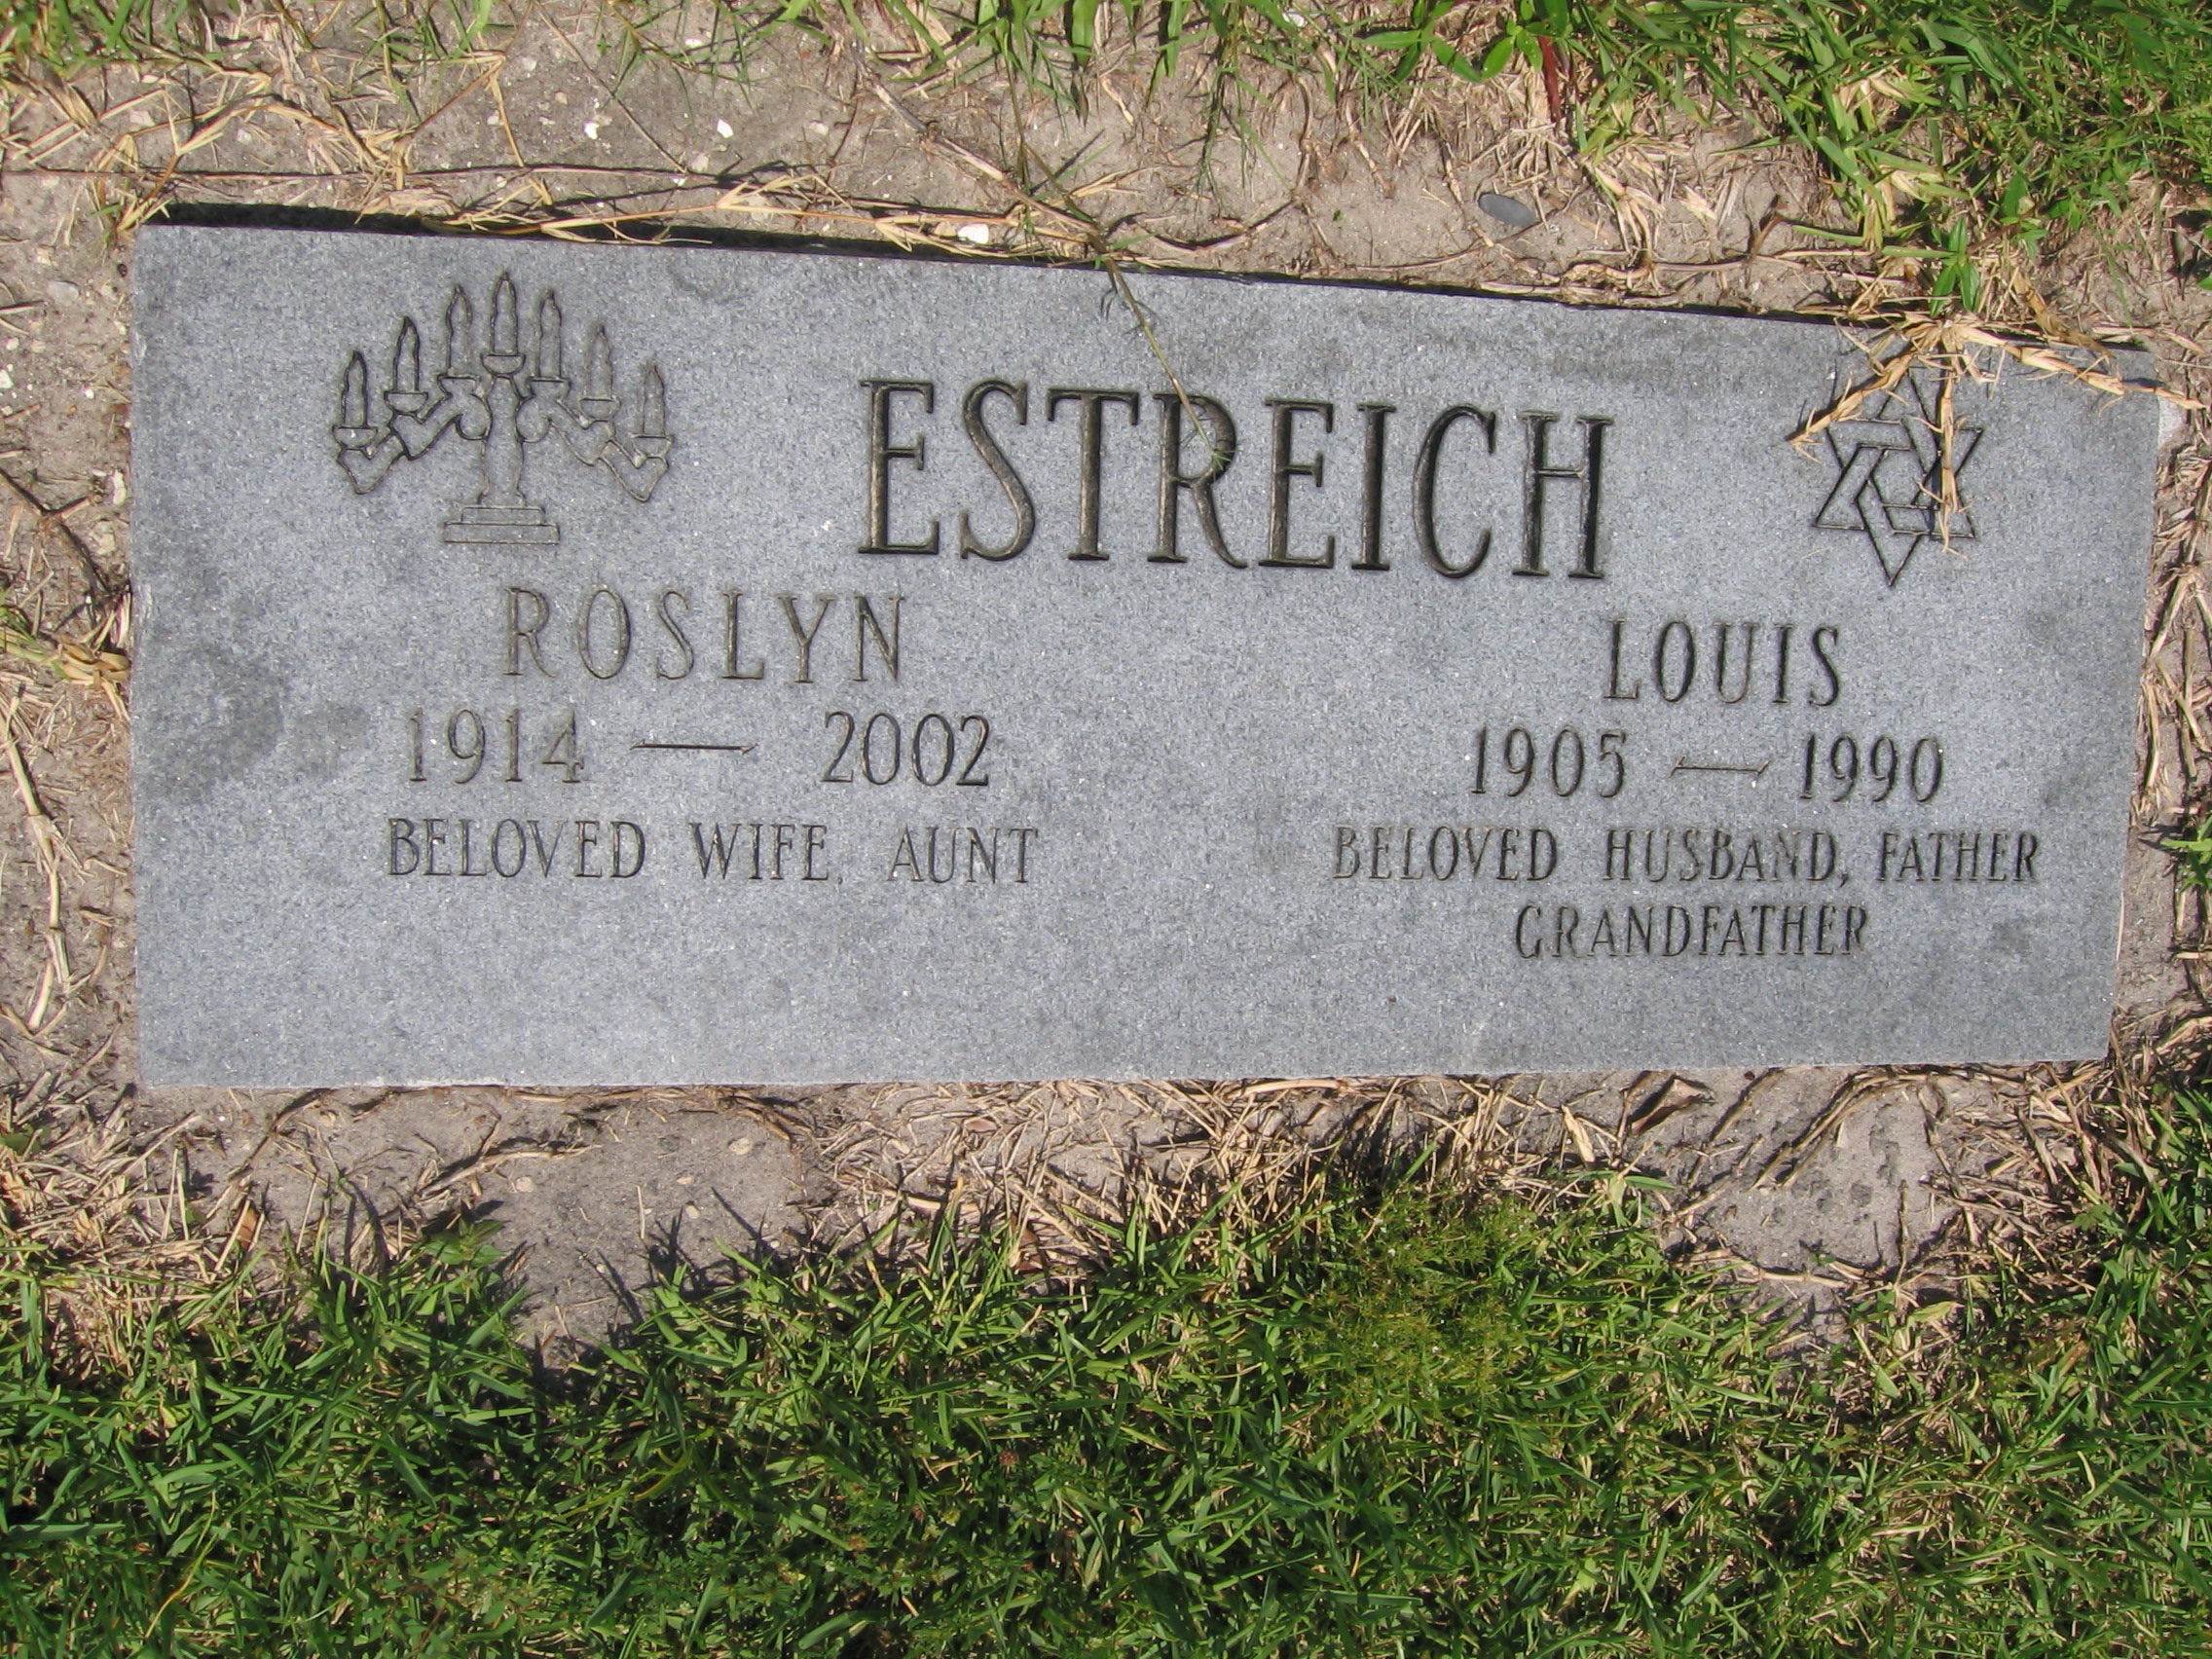 Louis Estreich